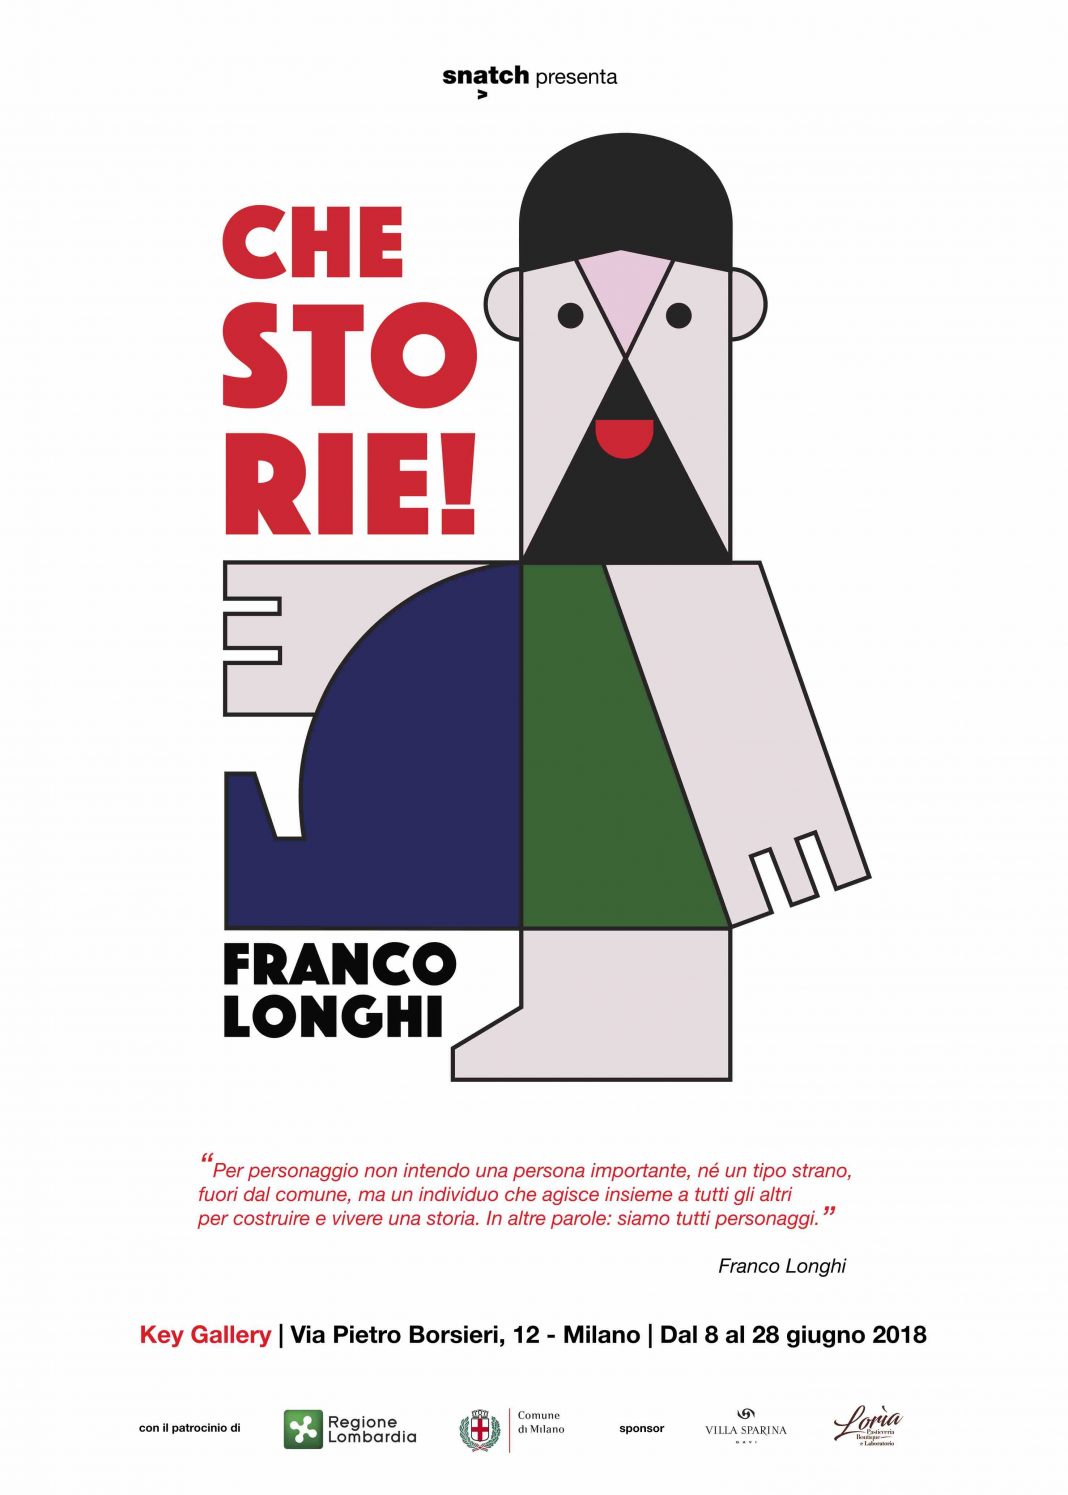 Franco Longhi – Che Storie!https://www.exibart.com/repository/media/eventi/2018/06/franco-longhi-8211-che-storie-1068x1495.jpg